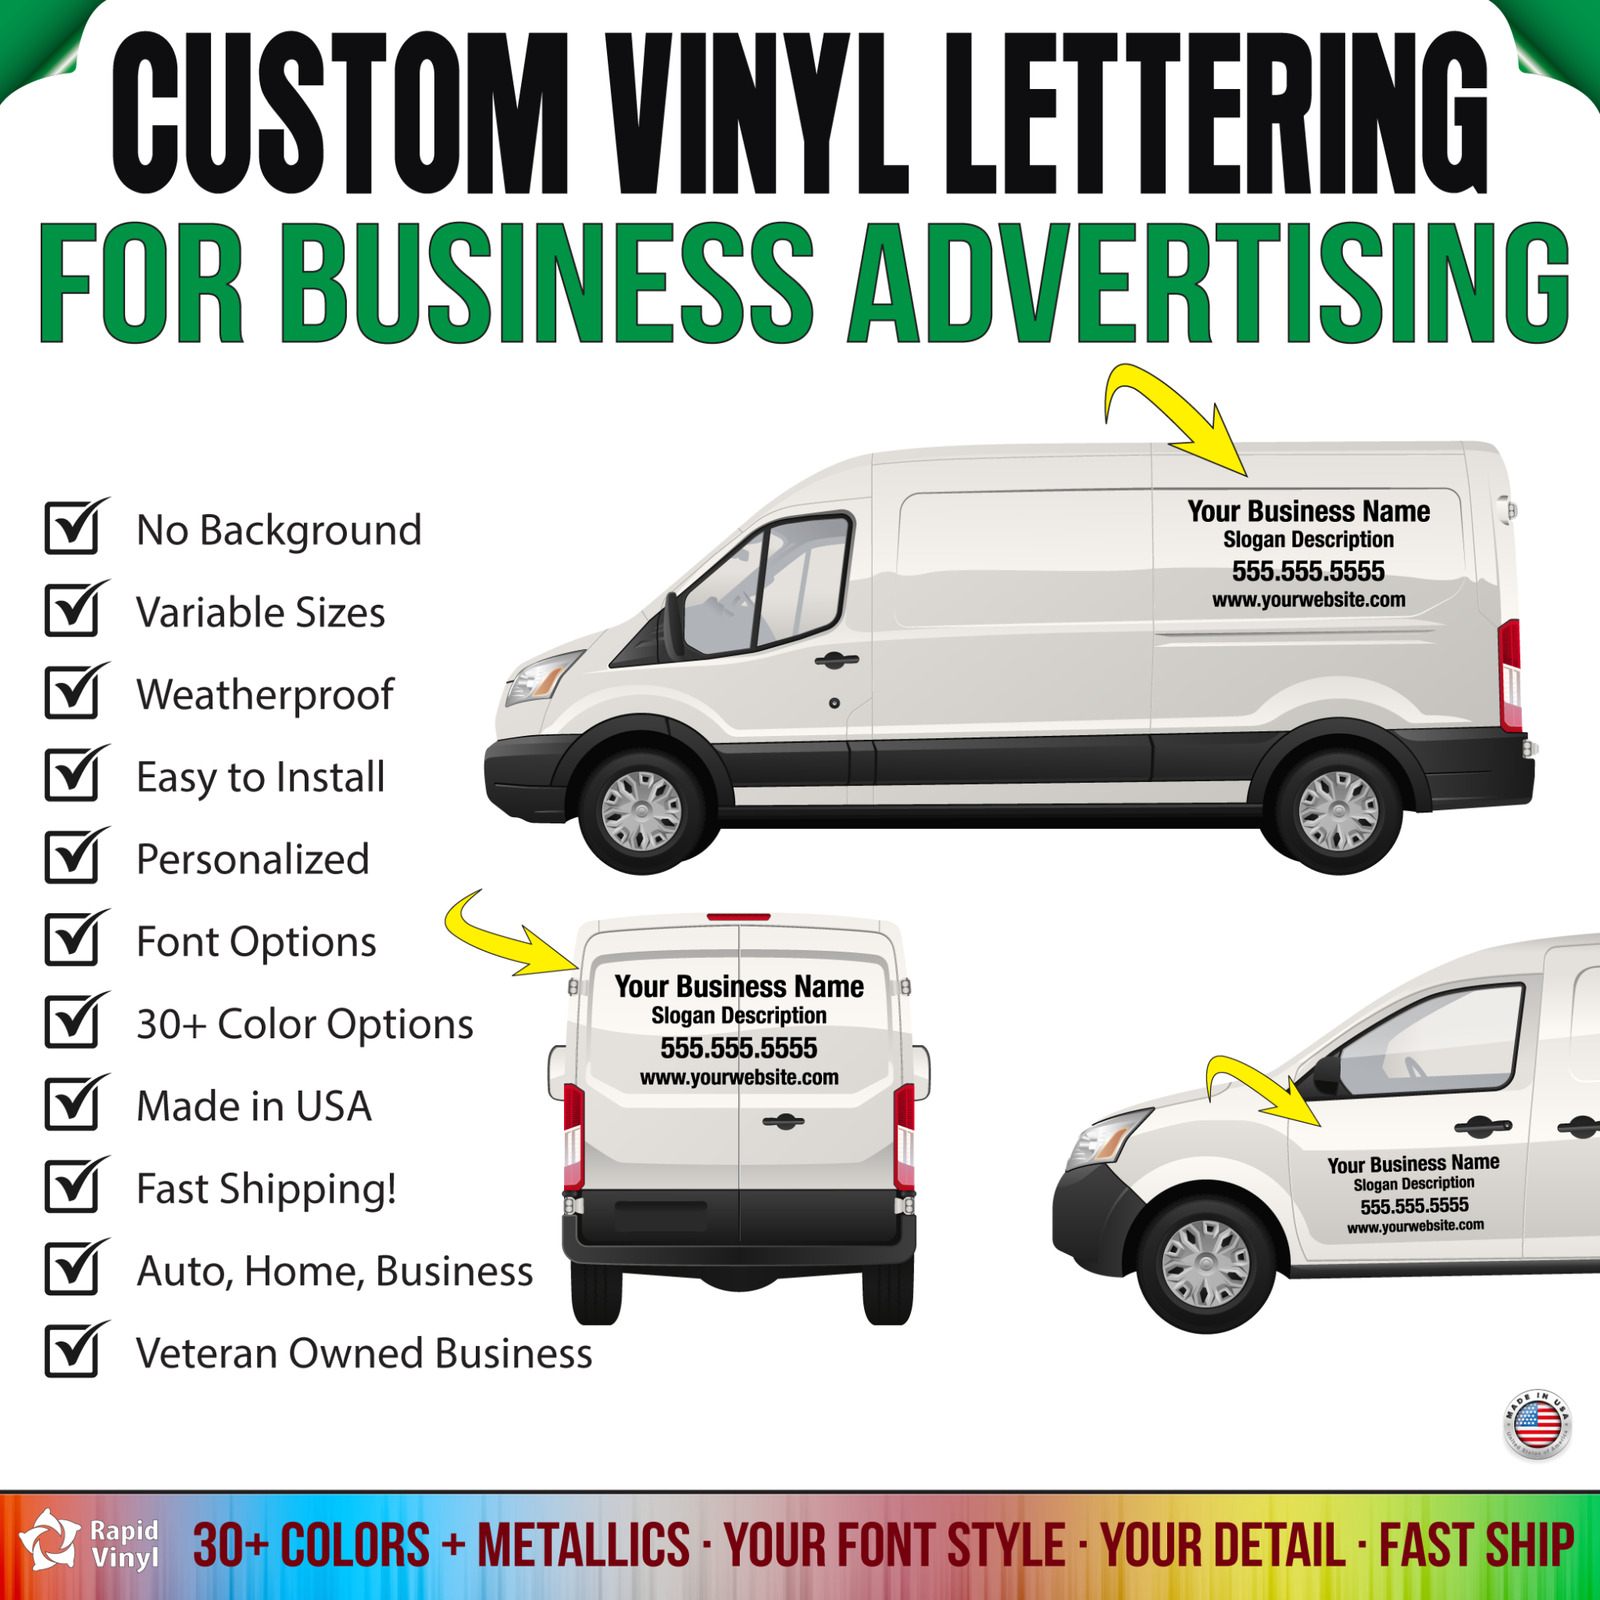 Custom Vinyl Lettering For Business Name Advertising Store Windows Truck Trailer